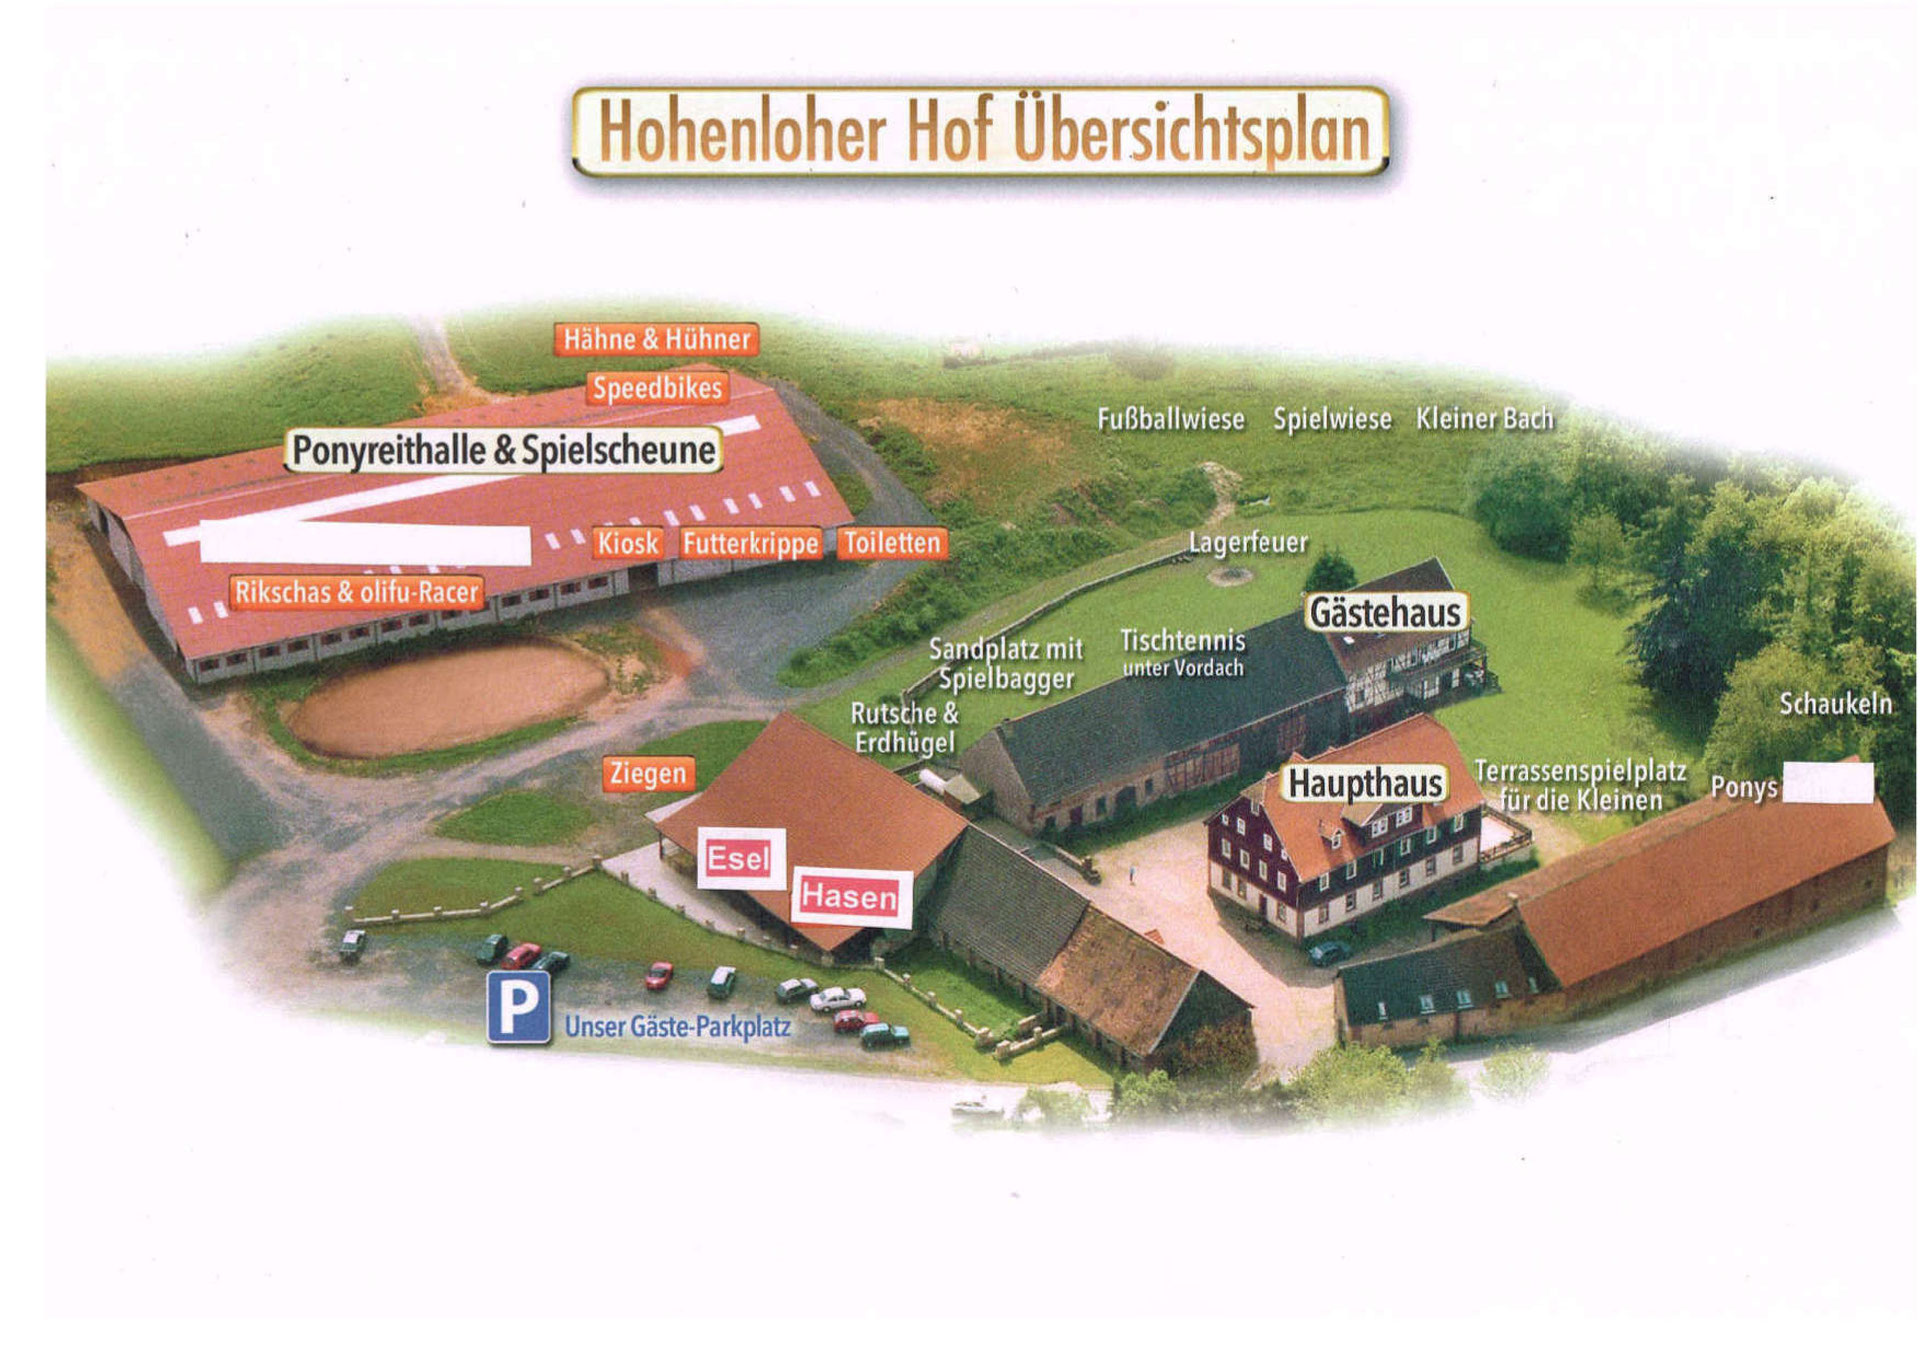 www.hohenloherhof.de